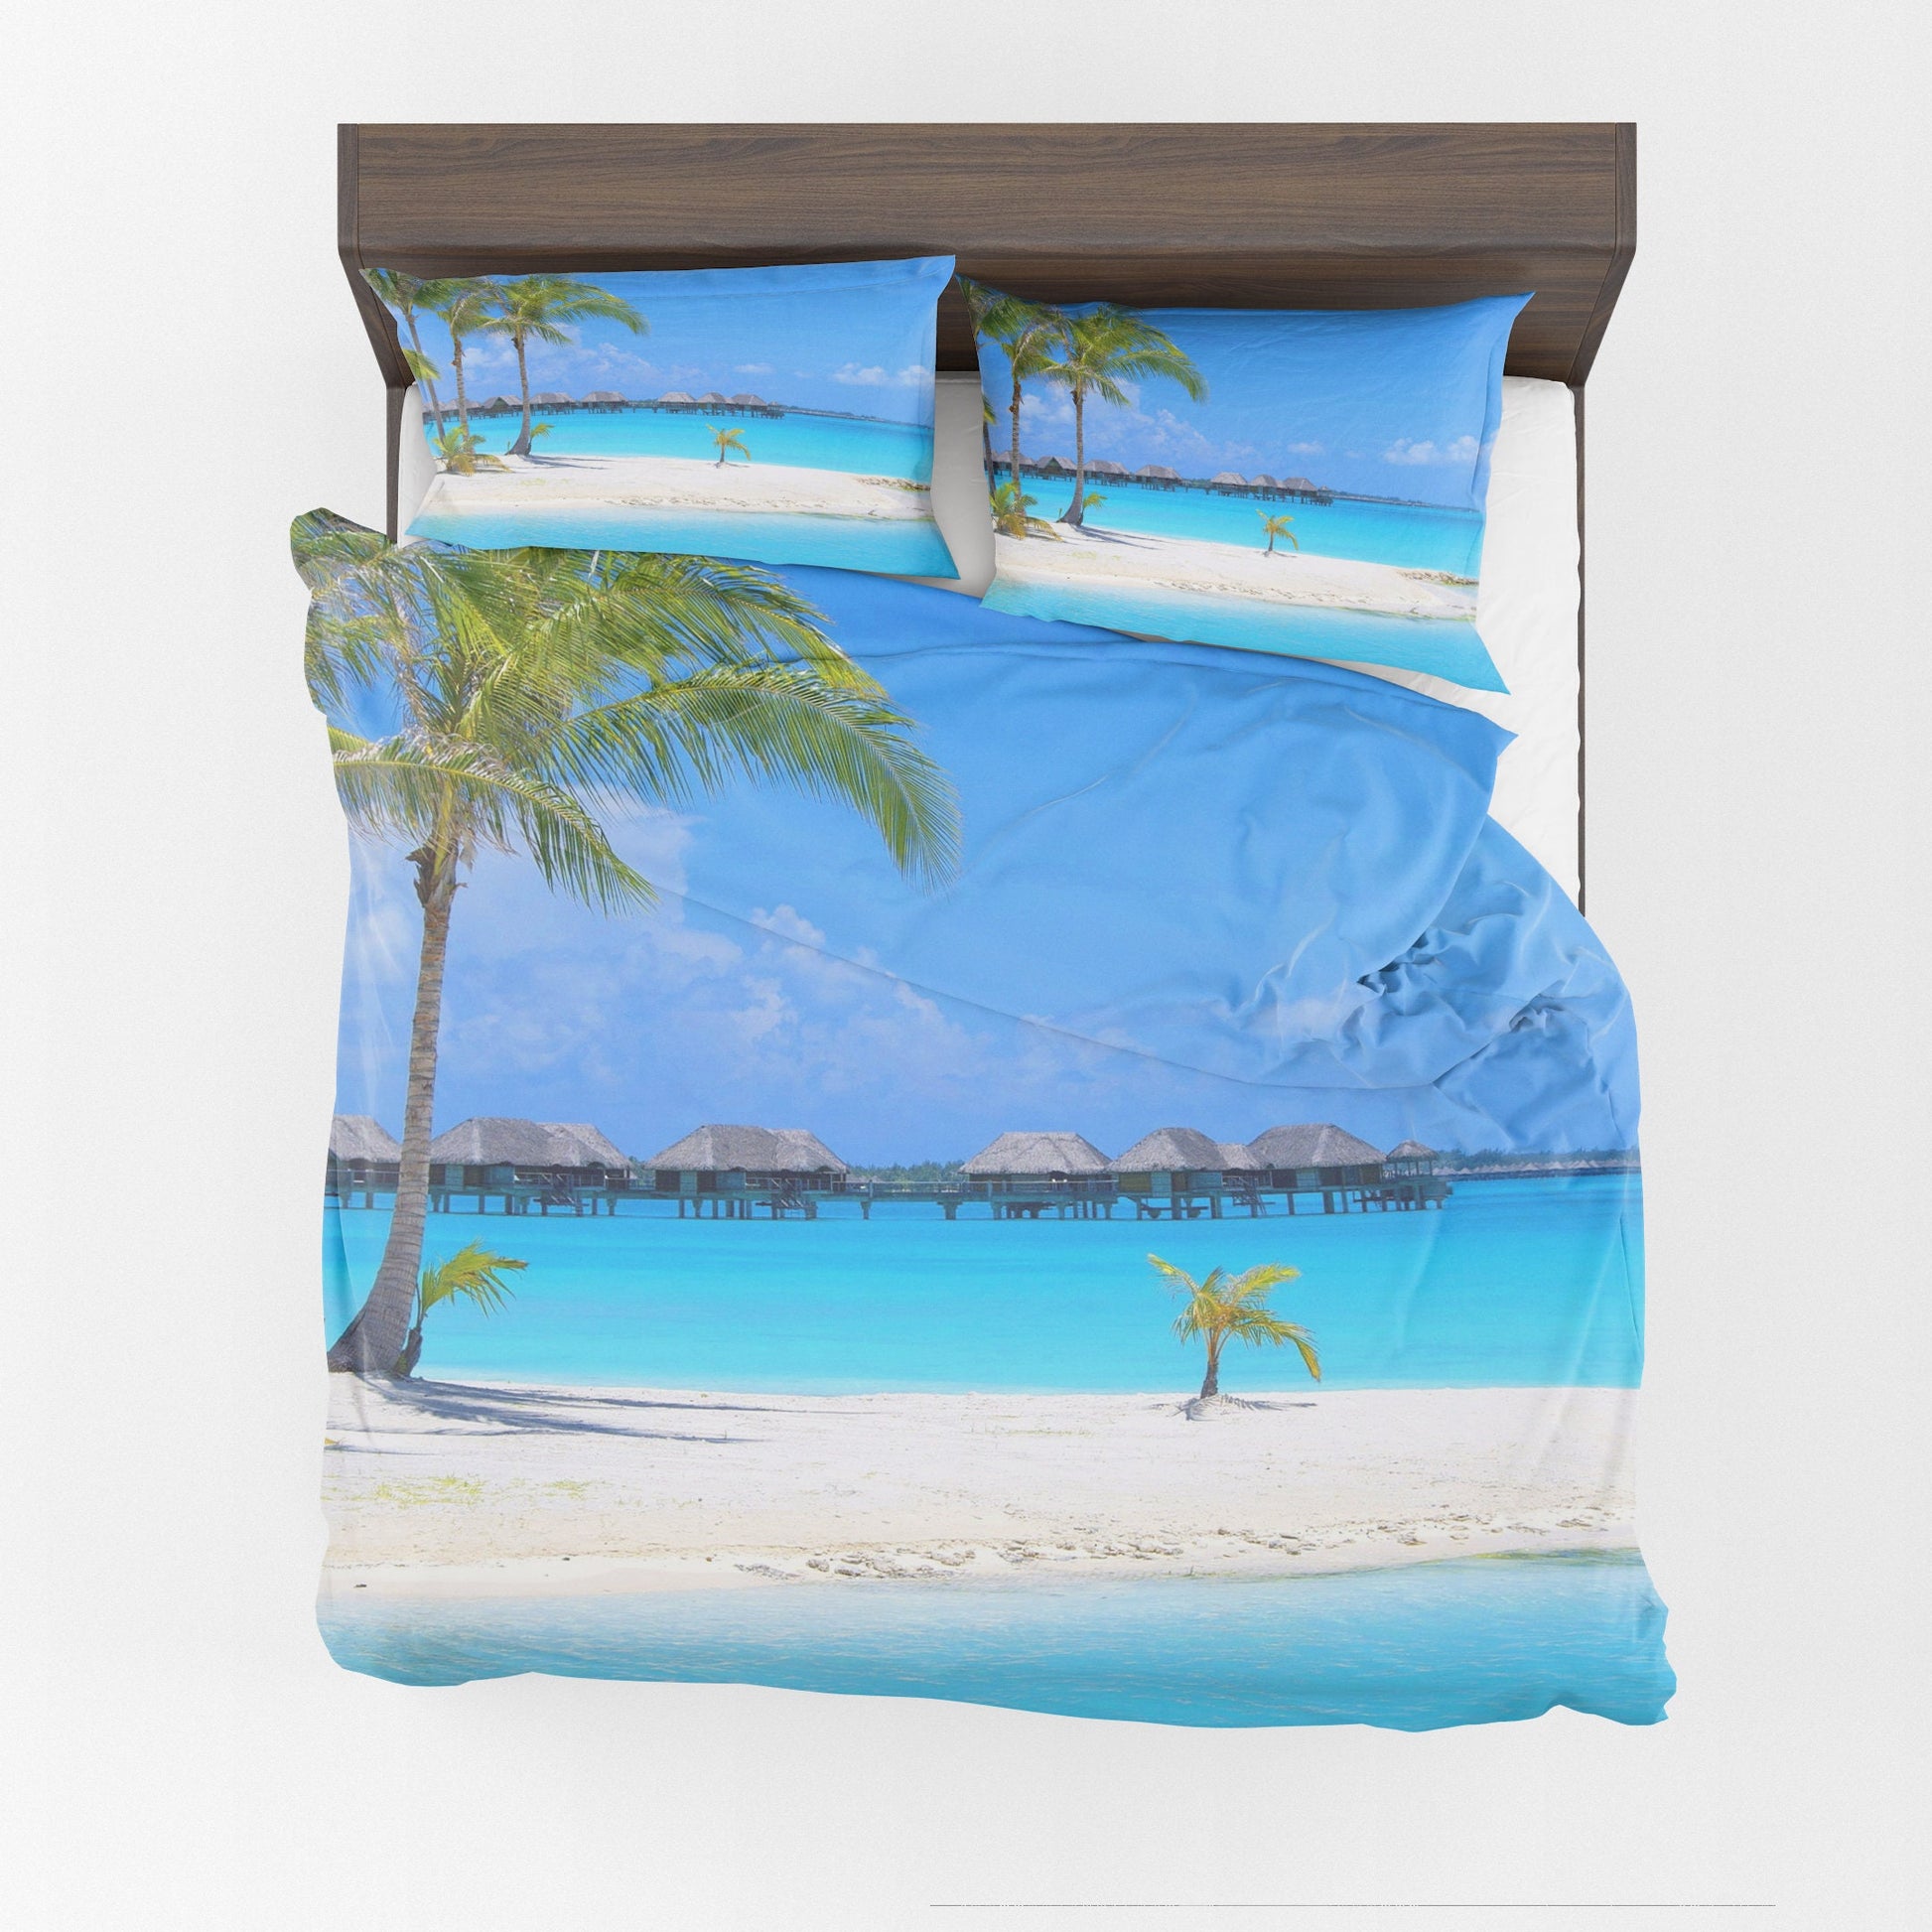 Island Comforter or Duvet Cover Beach comforters beachy duvet blue comforters island duvet palm trees comforter beachy decor beach duvet